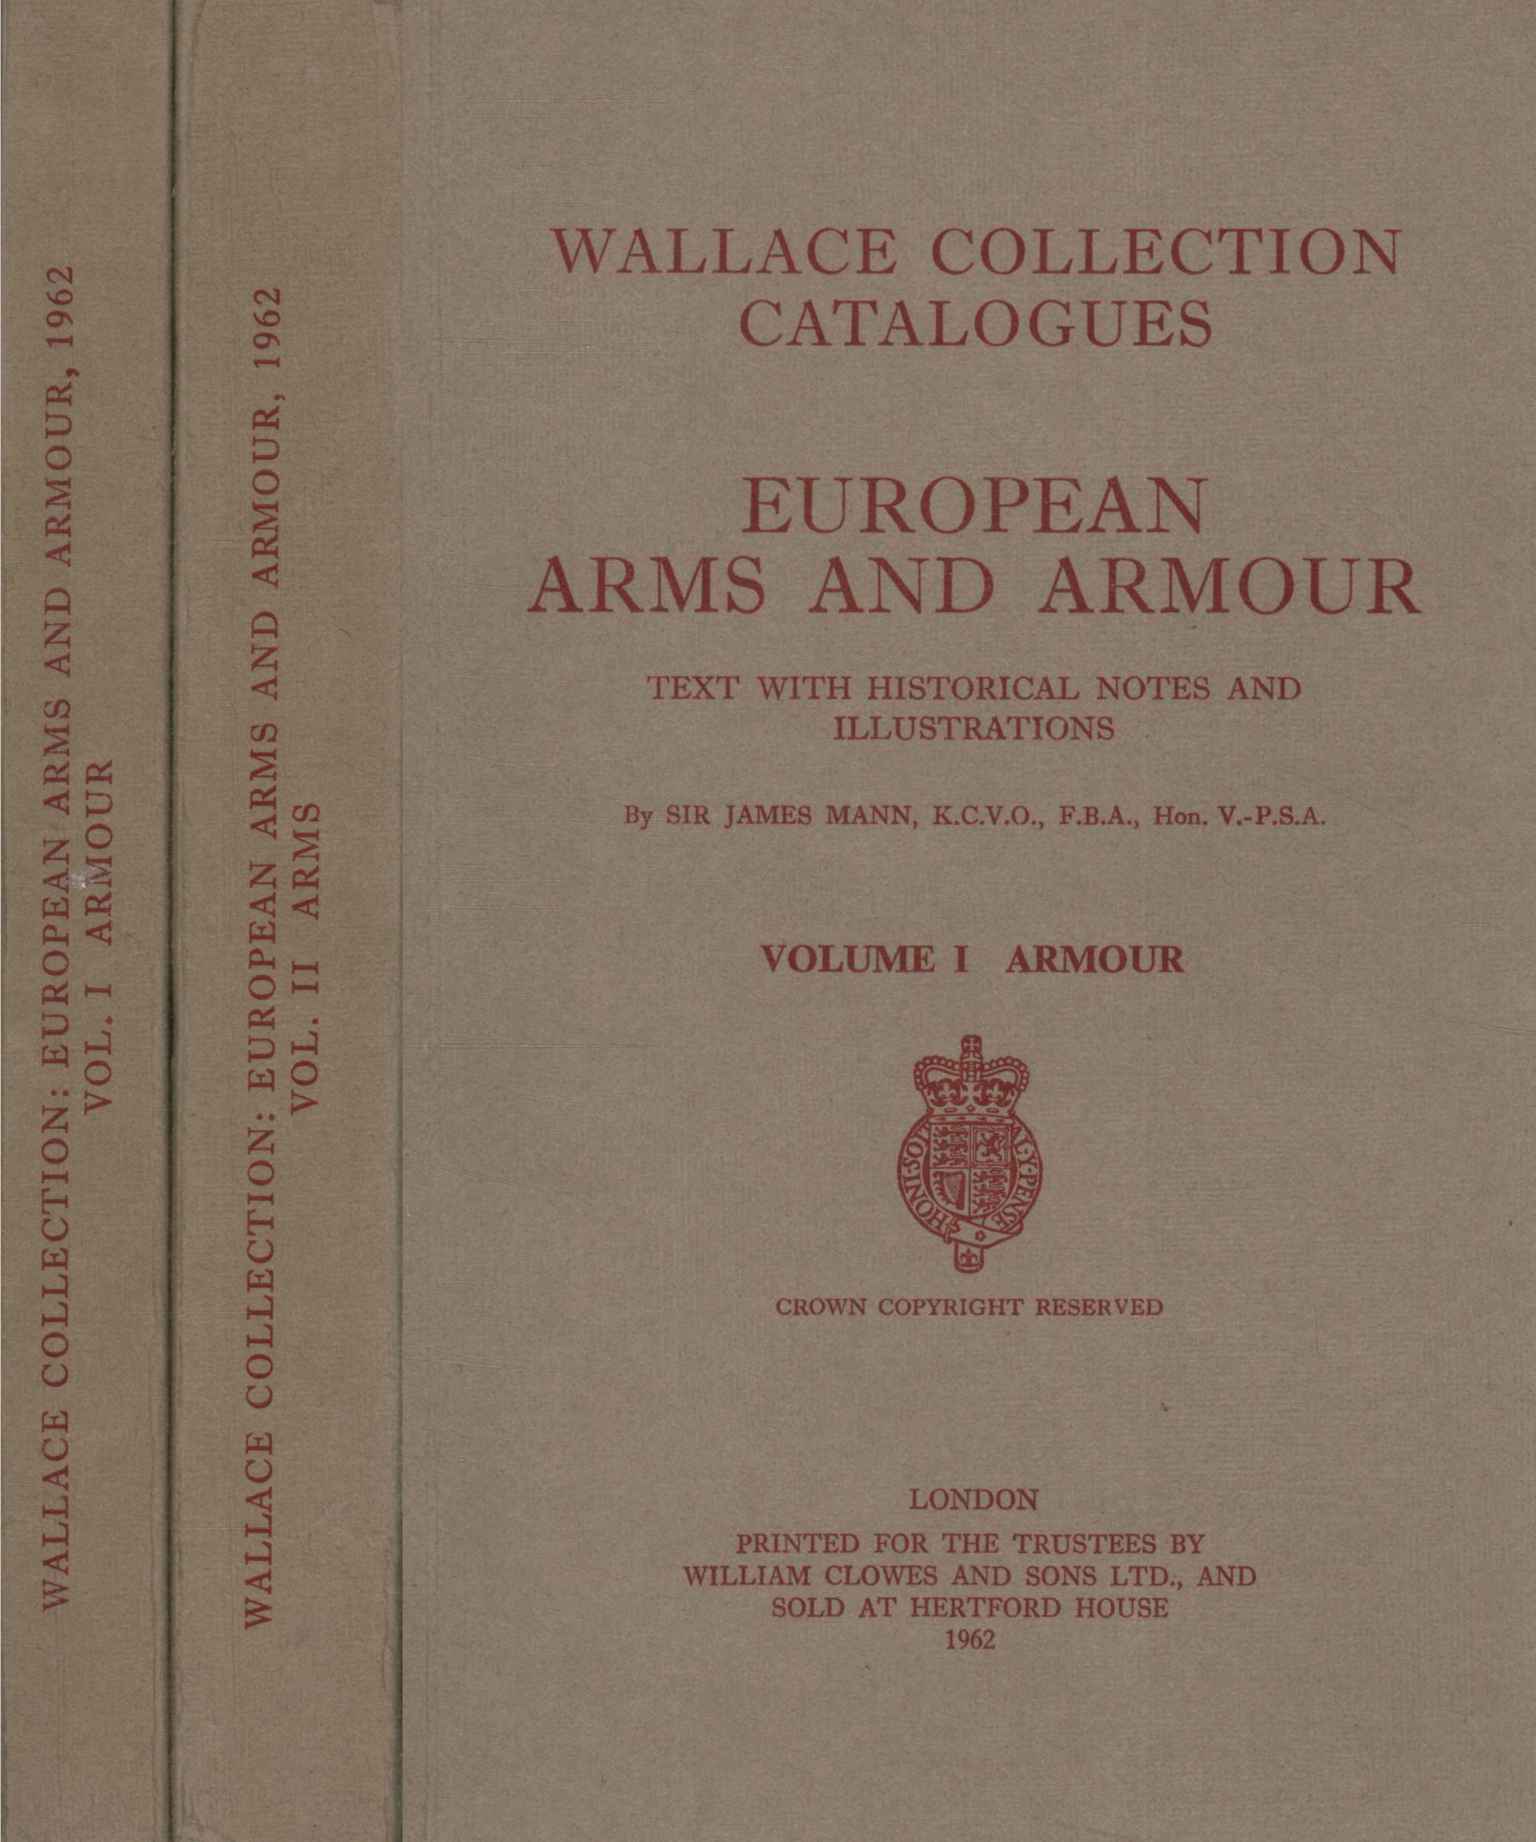 Catalogues de la collection Wallace : Ar européen